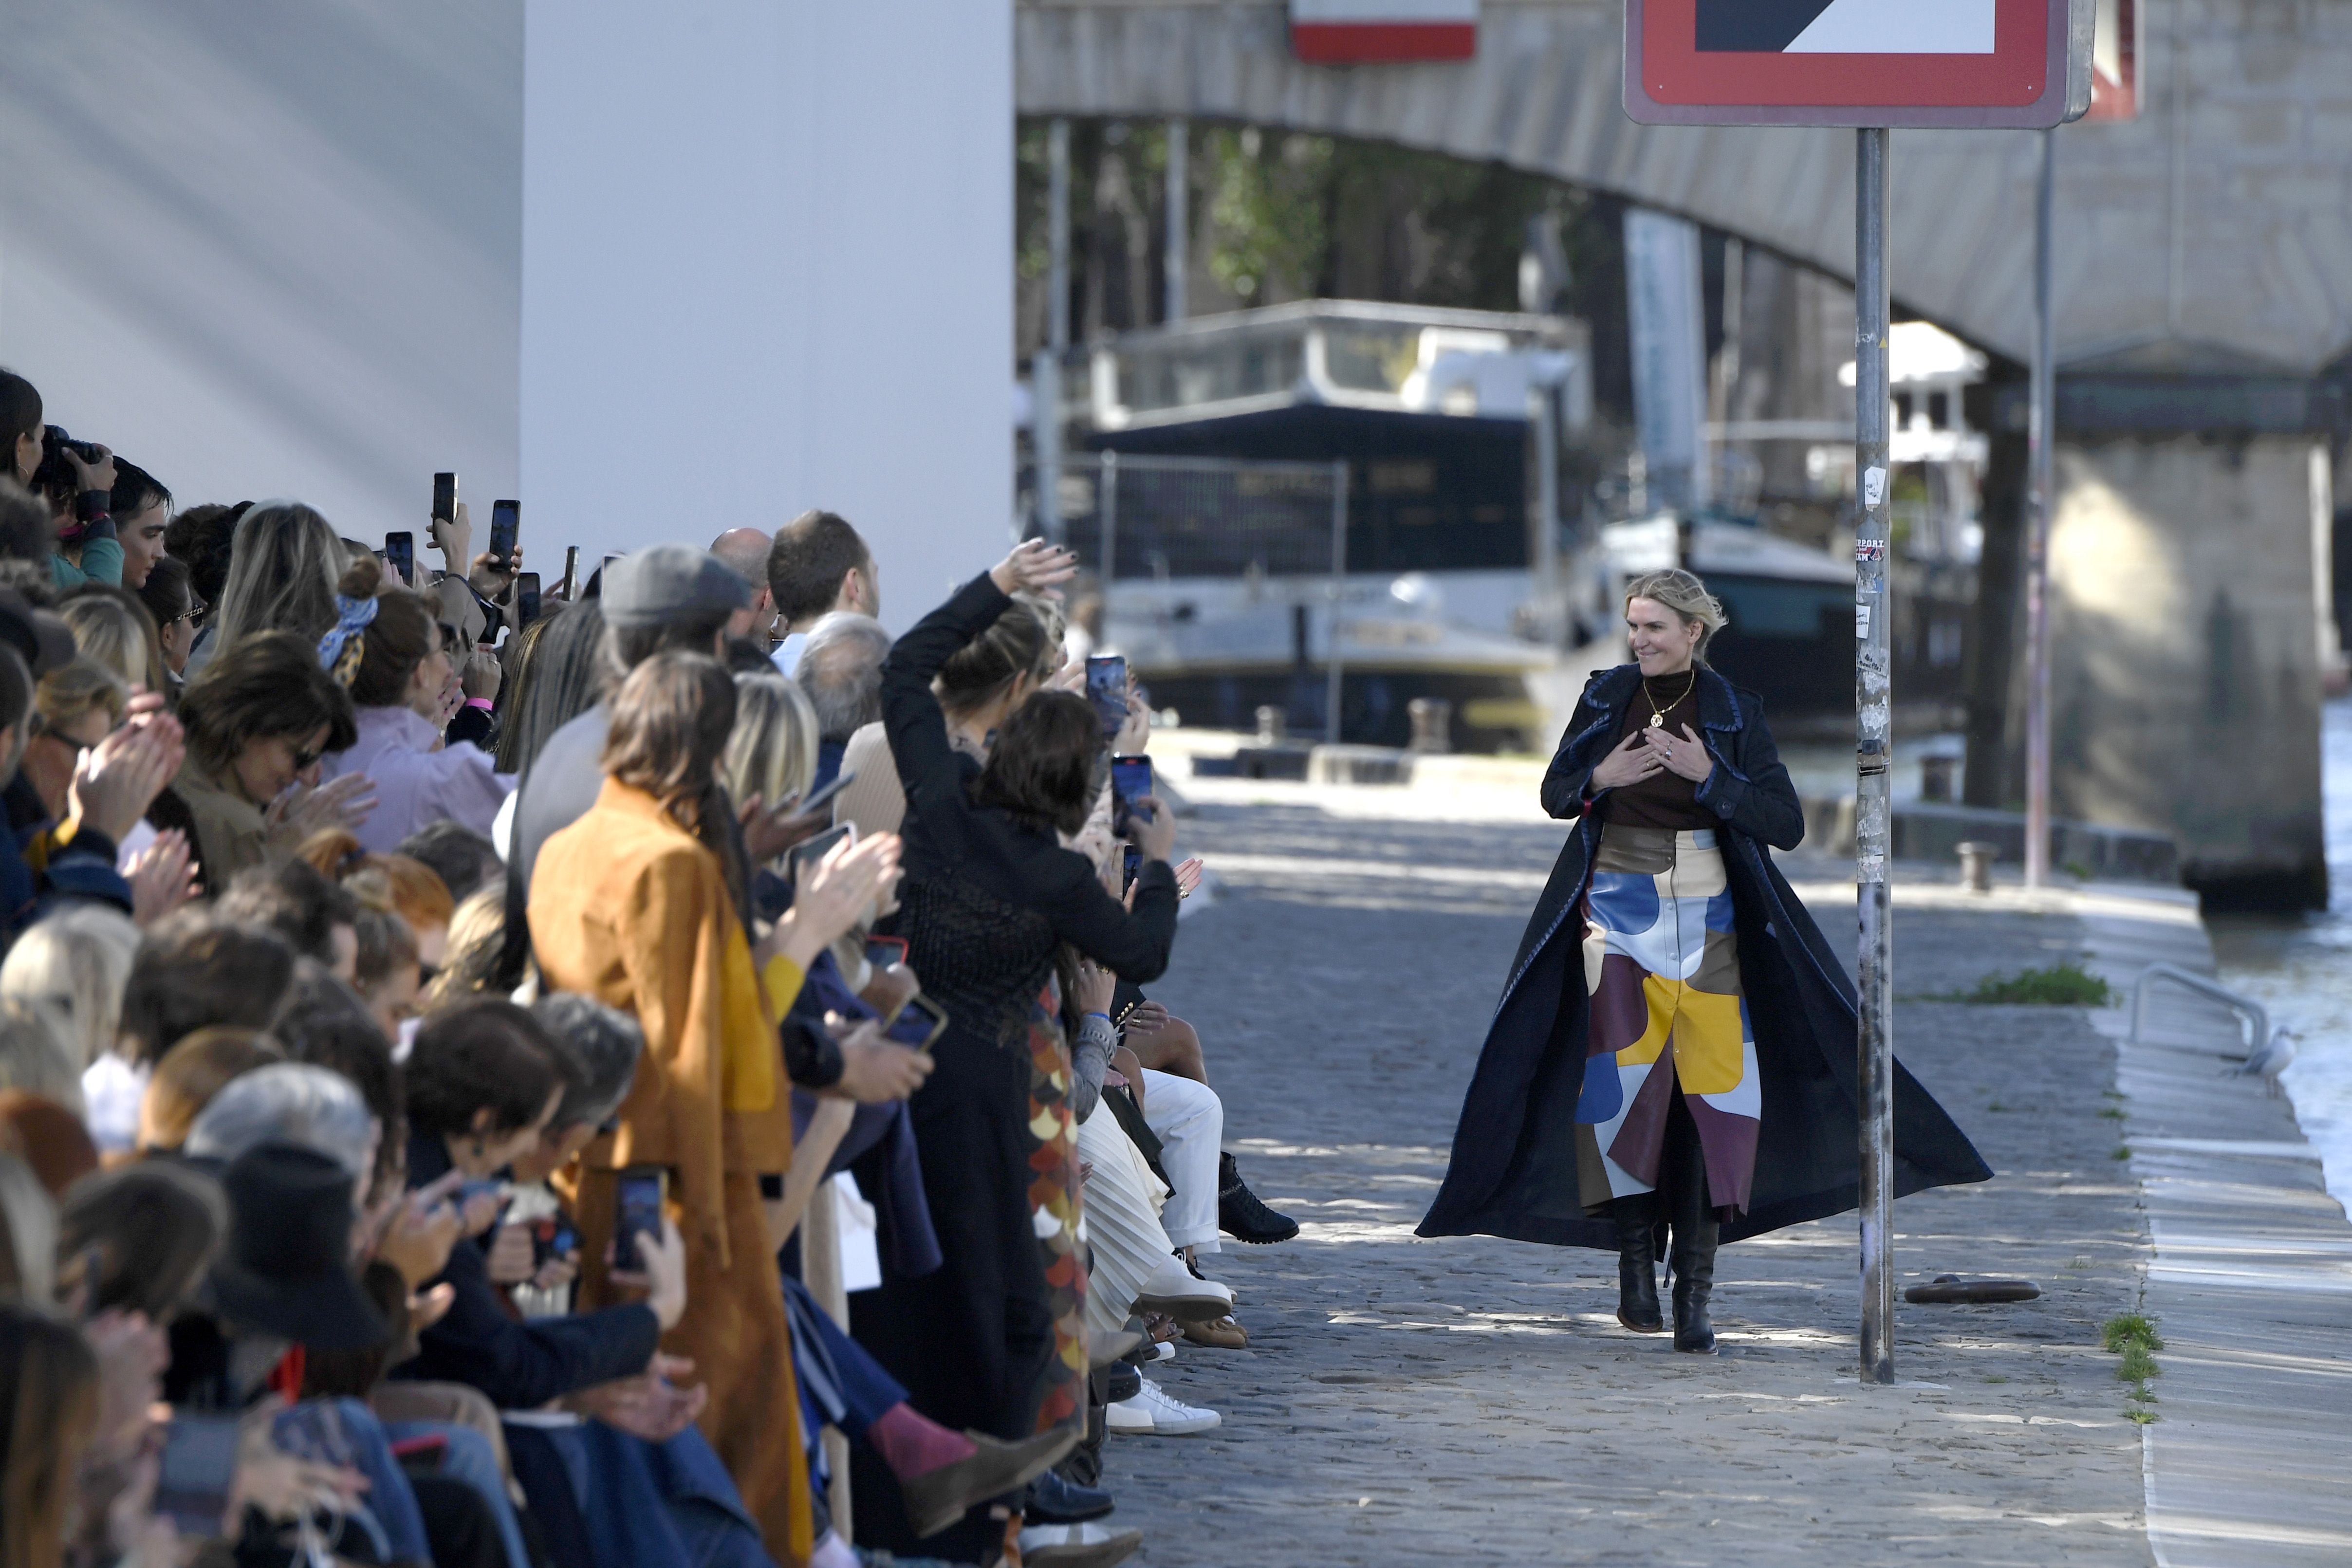 Giorgio Armani Interview - Giorgio Armani on His Fashion Background and  Where He Finds Creativity